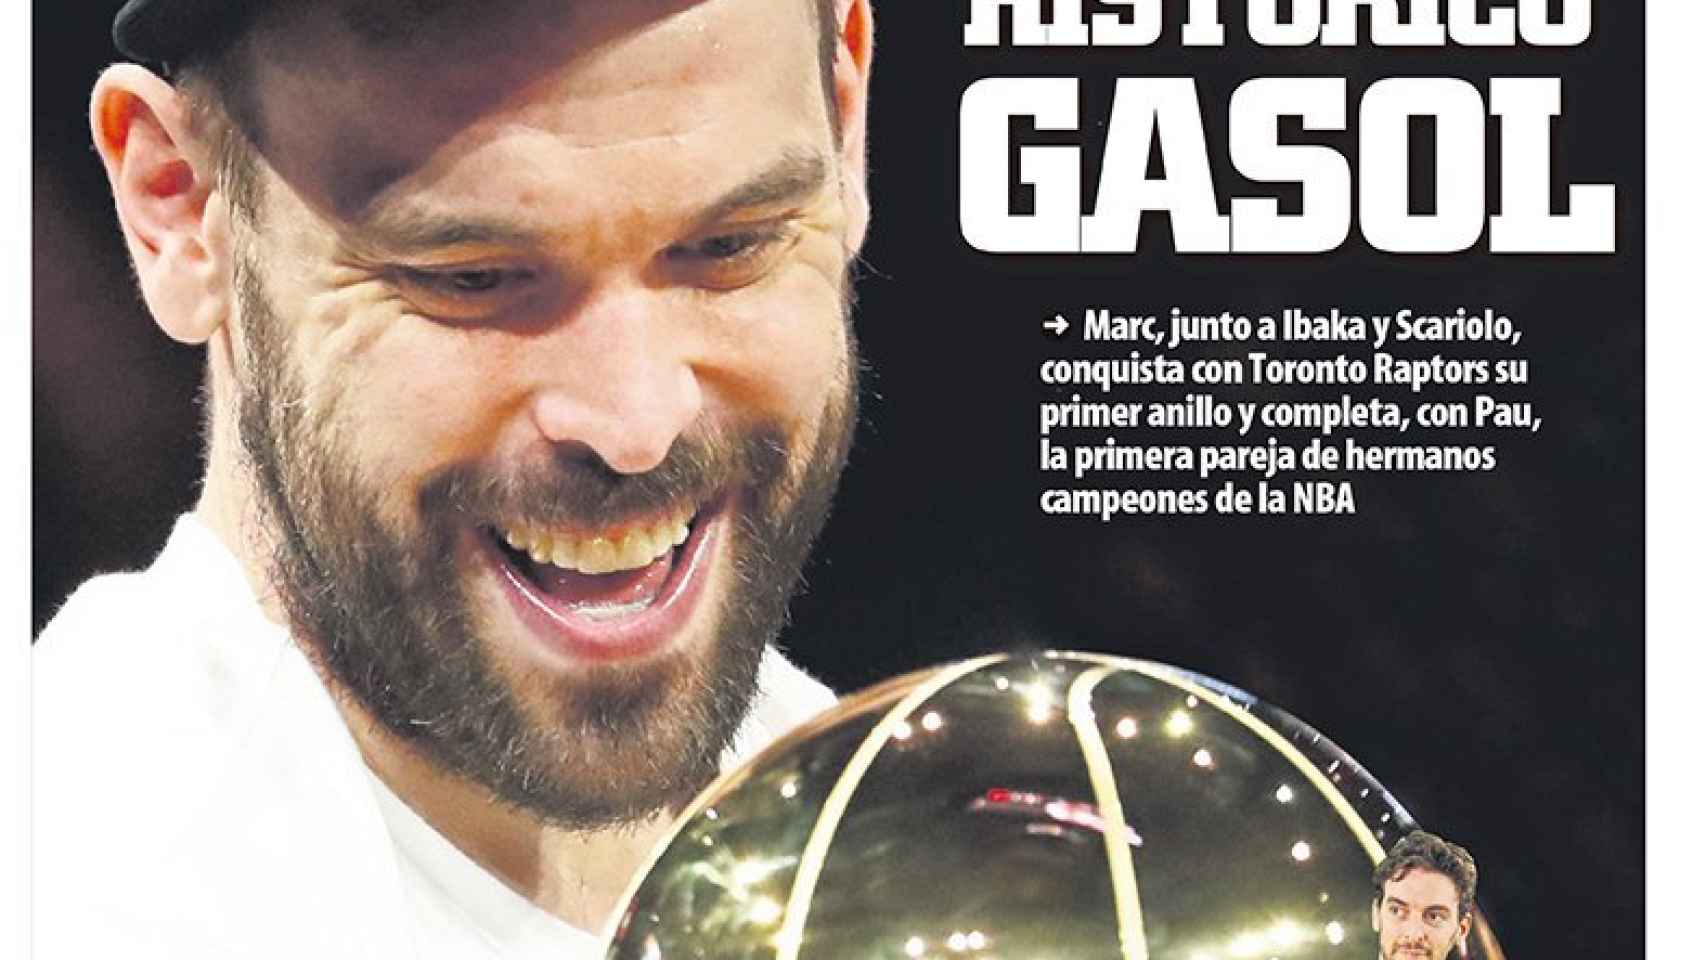 La portada del diario Mundo Deportivo (15/06/2019)